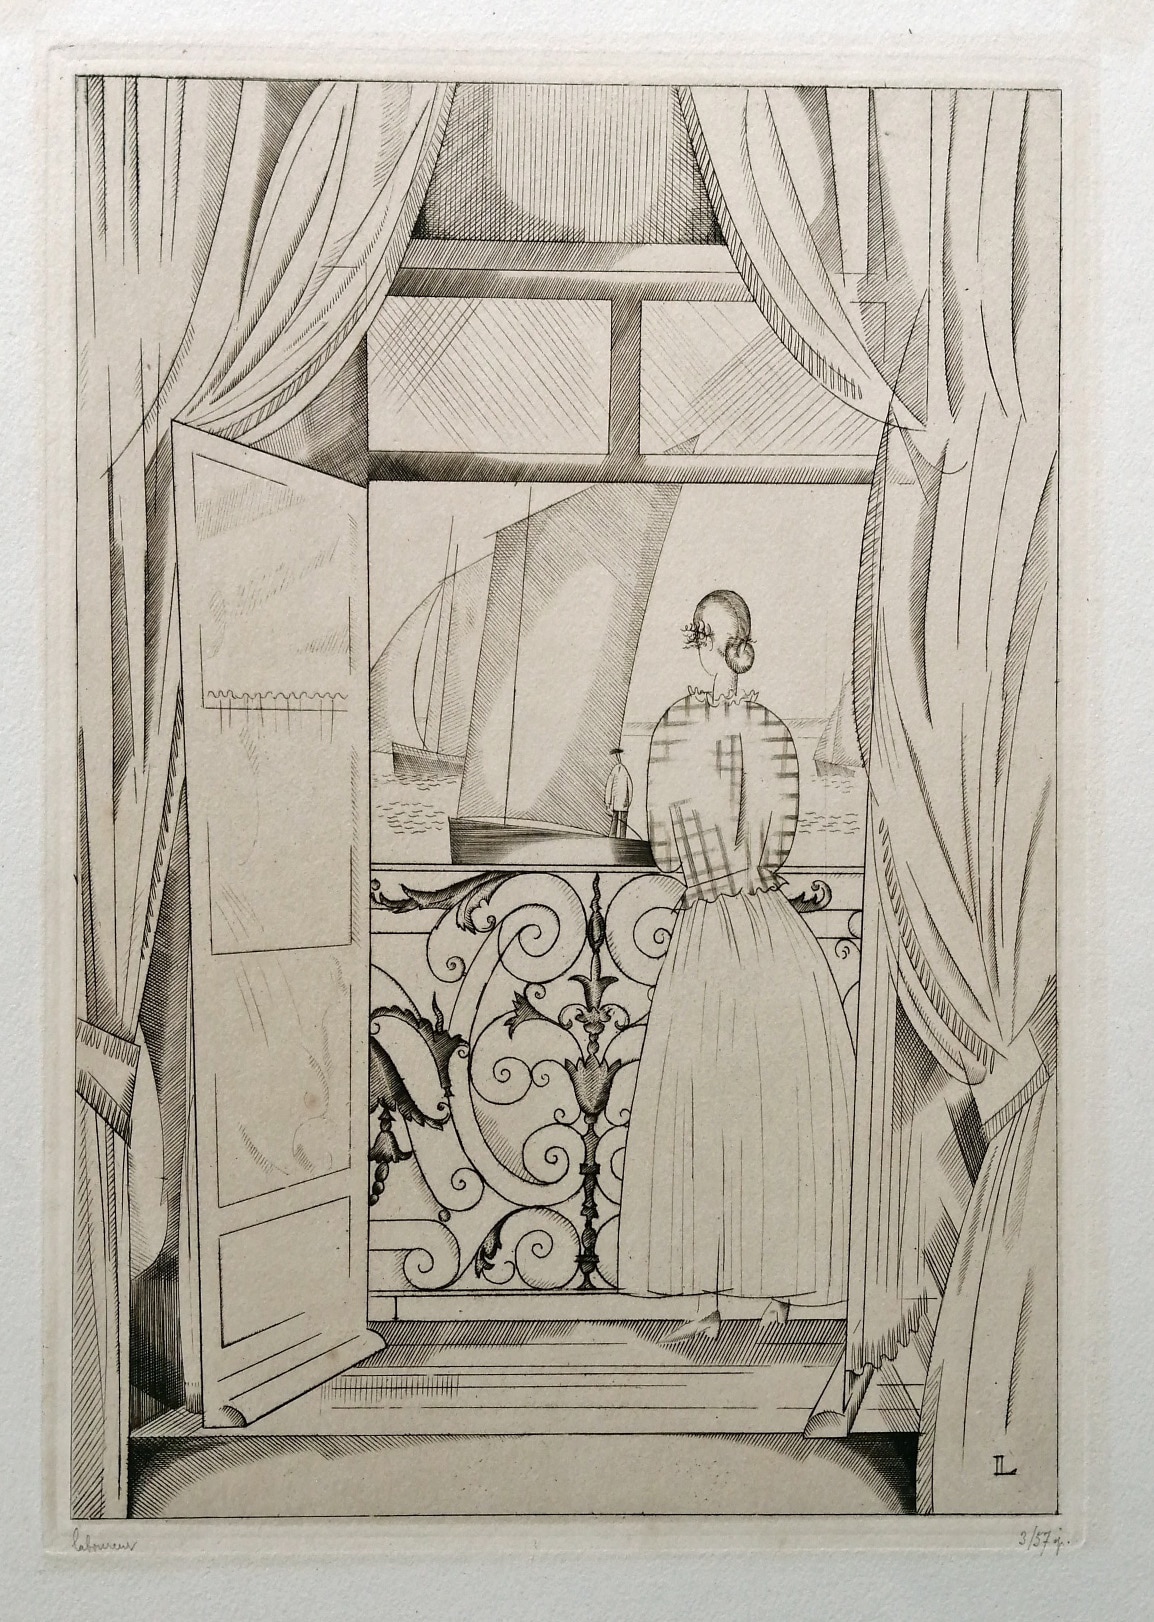 Jean-Émile Laboureur, Le Balcon sur la Mer, 1923. Incisione su carta tessile, 41,9 x 28,3 cm [30 x 20,9 cm]. Courtesy Galerie Stéphane Brugal.